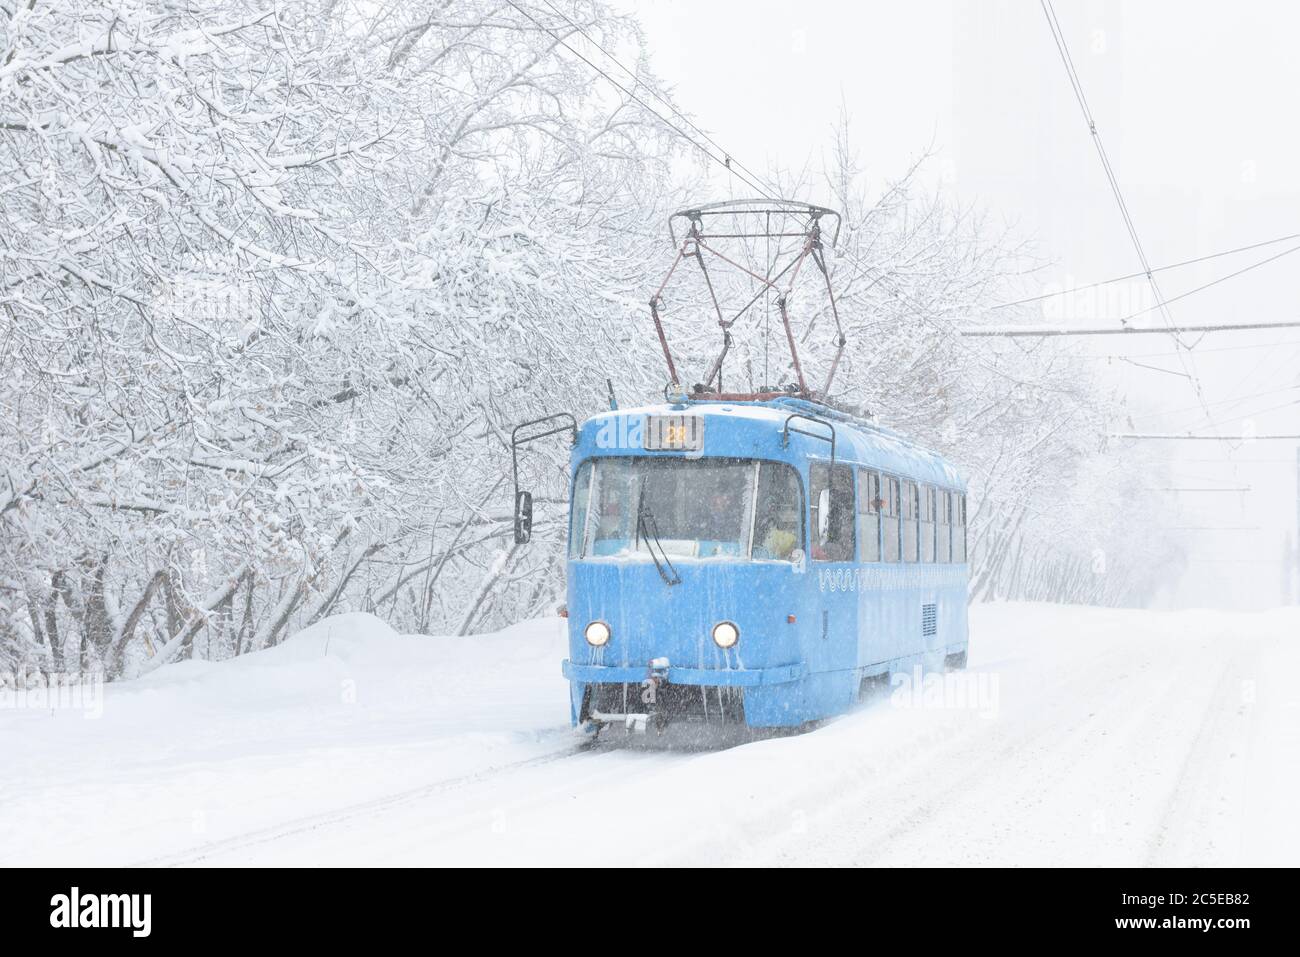 Tram geht entlang der Straße während Schneesturm im Winter in Moskau, Russland. Kälte und Schneefall in Moskau. Eisige Straßenbahn in verschneiten Moskau. Traditionelle Ansicht von Mo Stockfoto